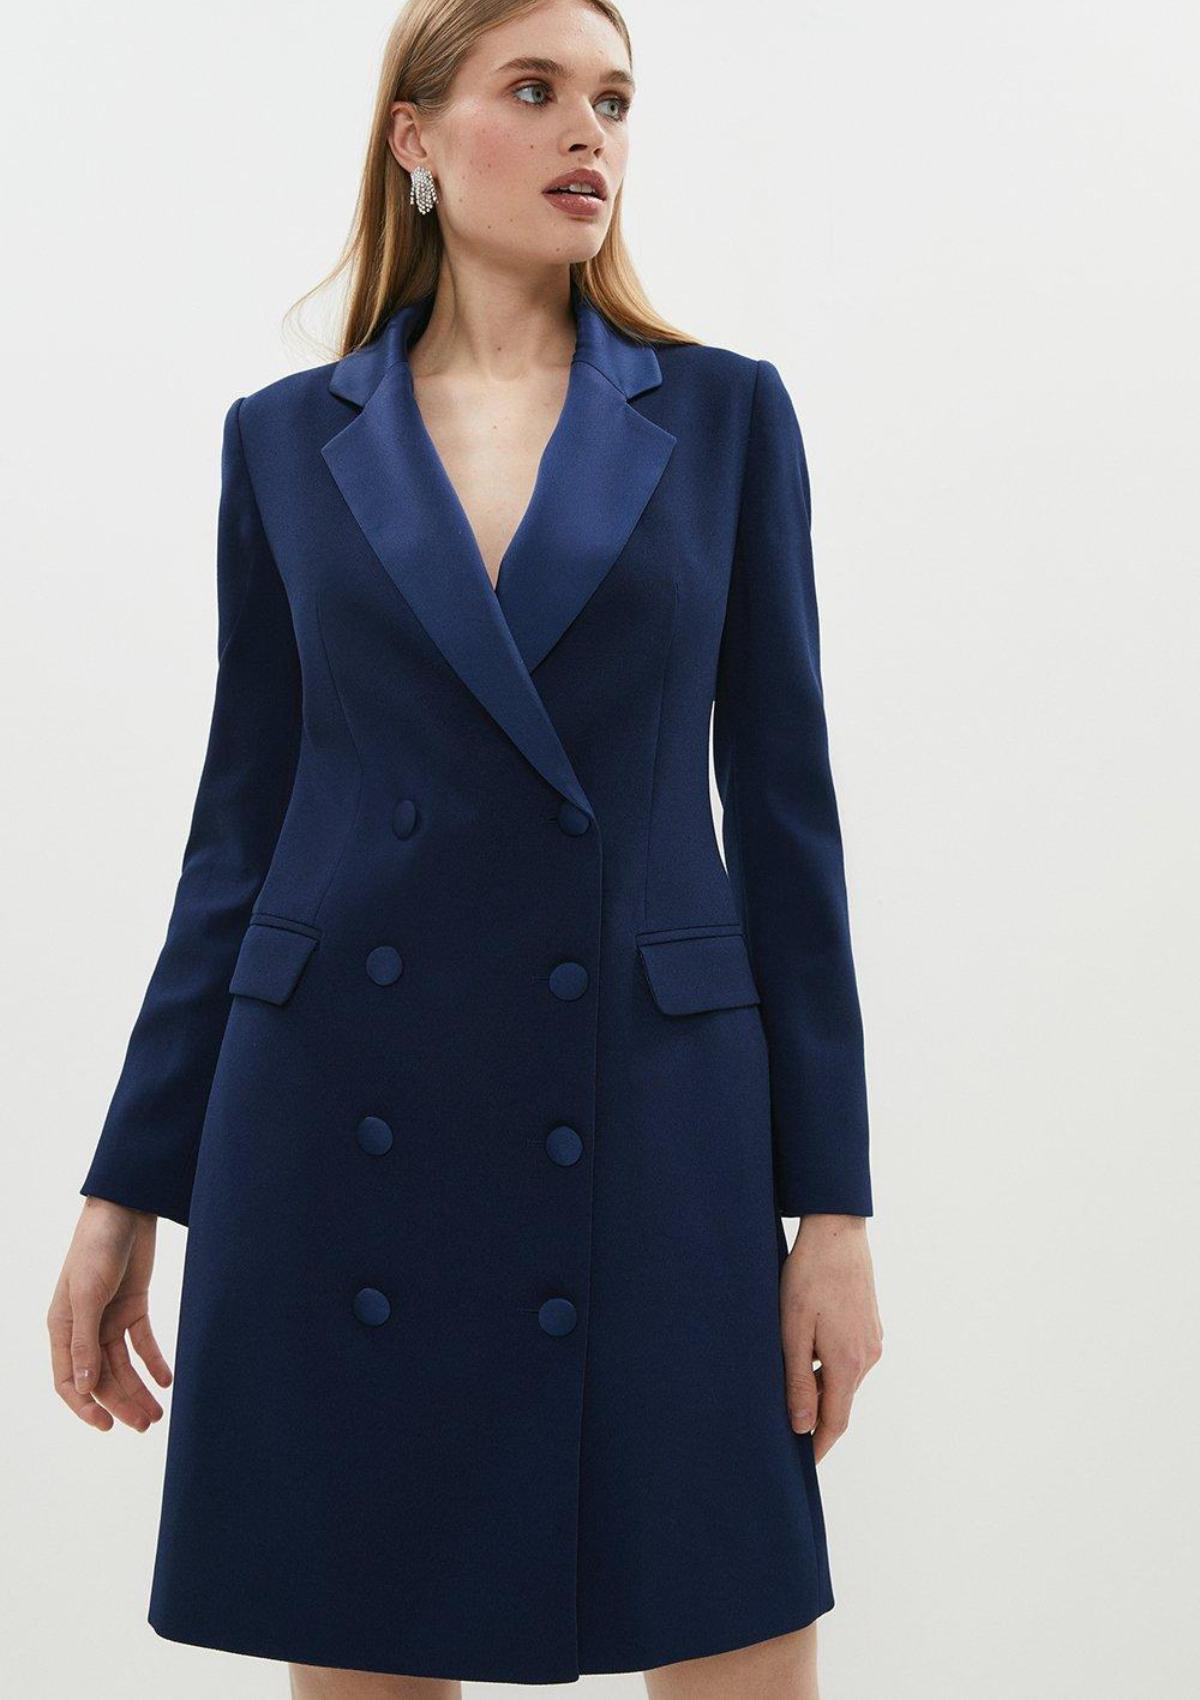 navy dress coat womens  Shop The Best Discounts Online   avsenggcollegeacin